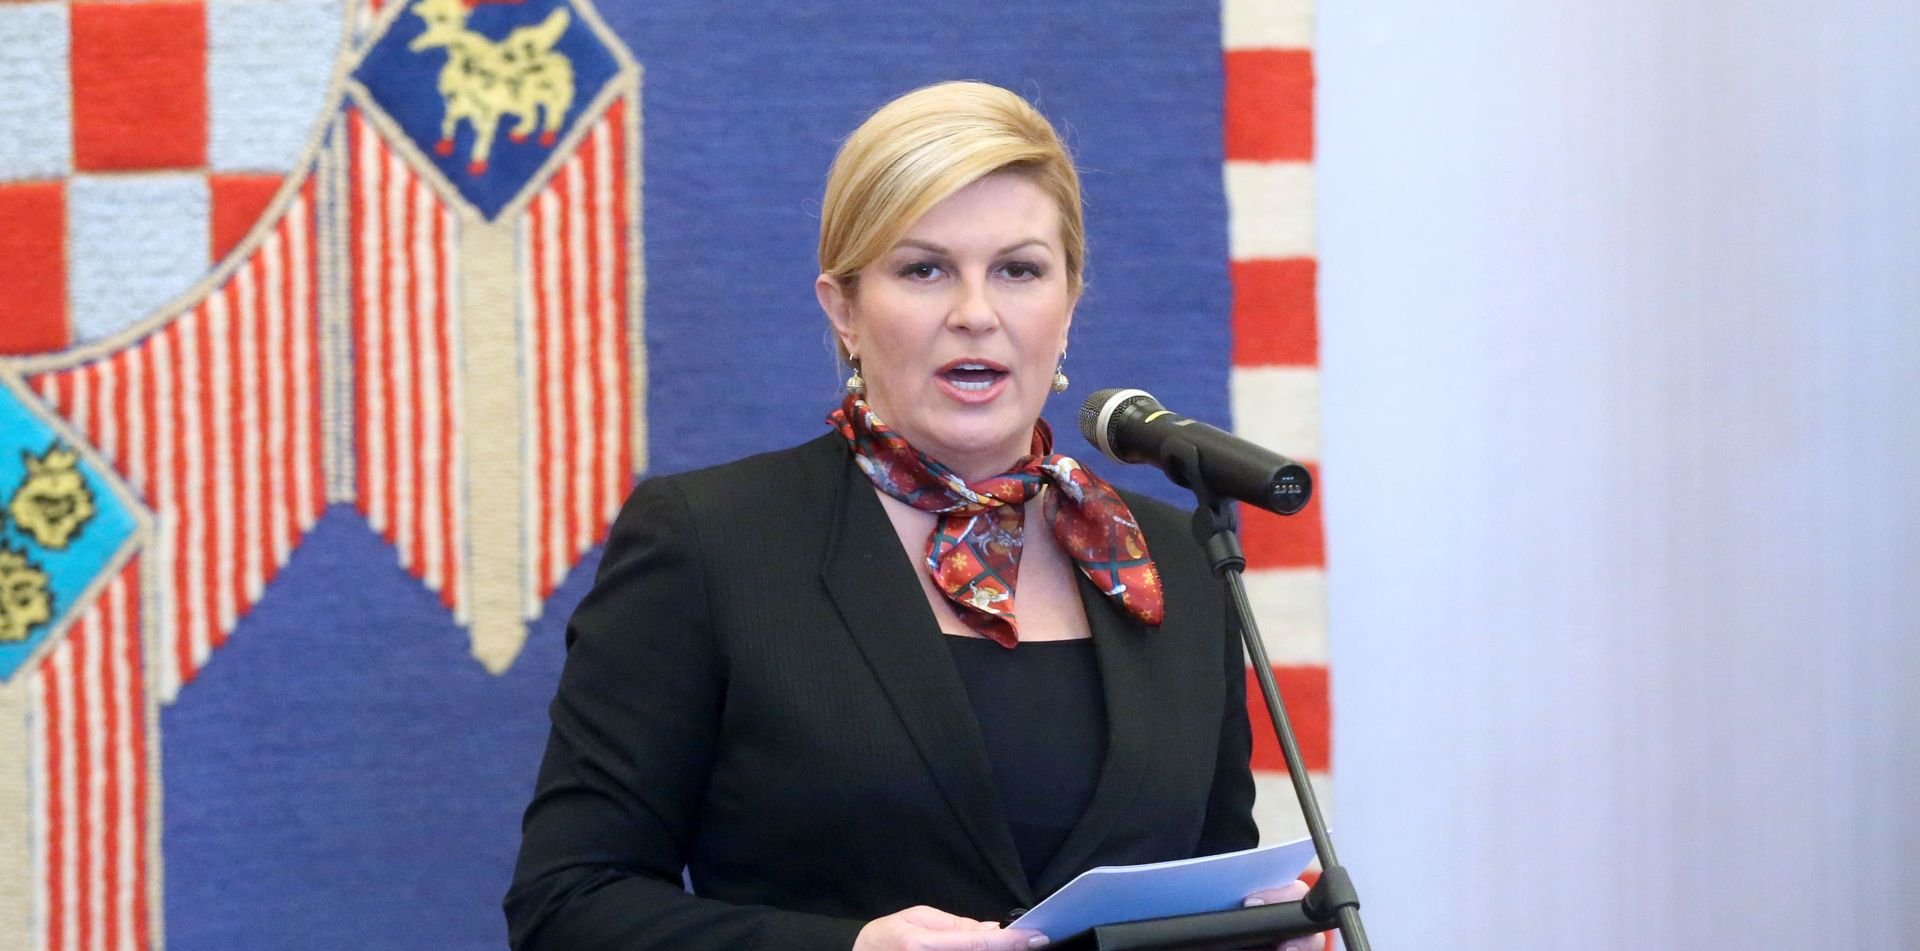 Uskrsna čestitka  predsjednice Kolinde Grabar Kitarović